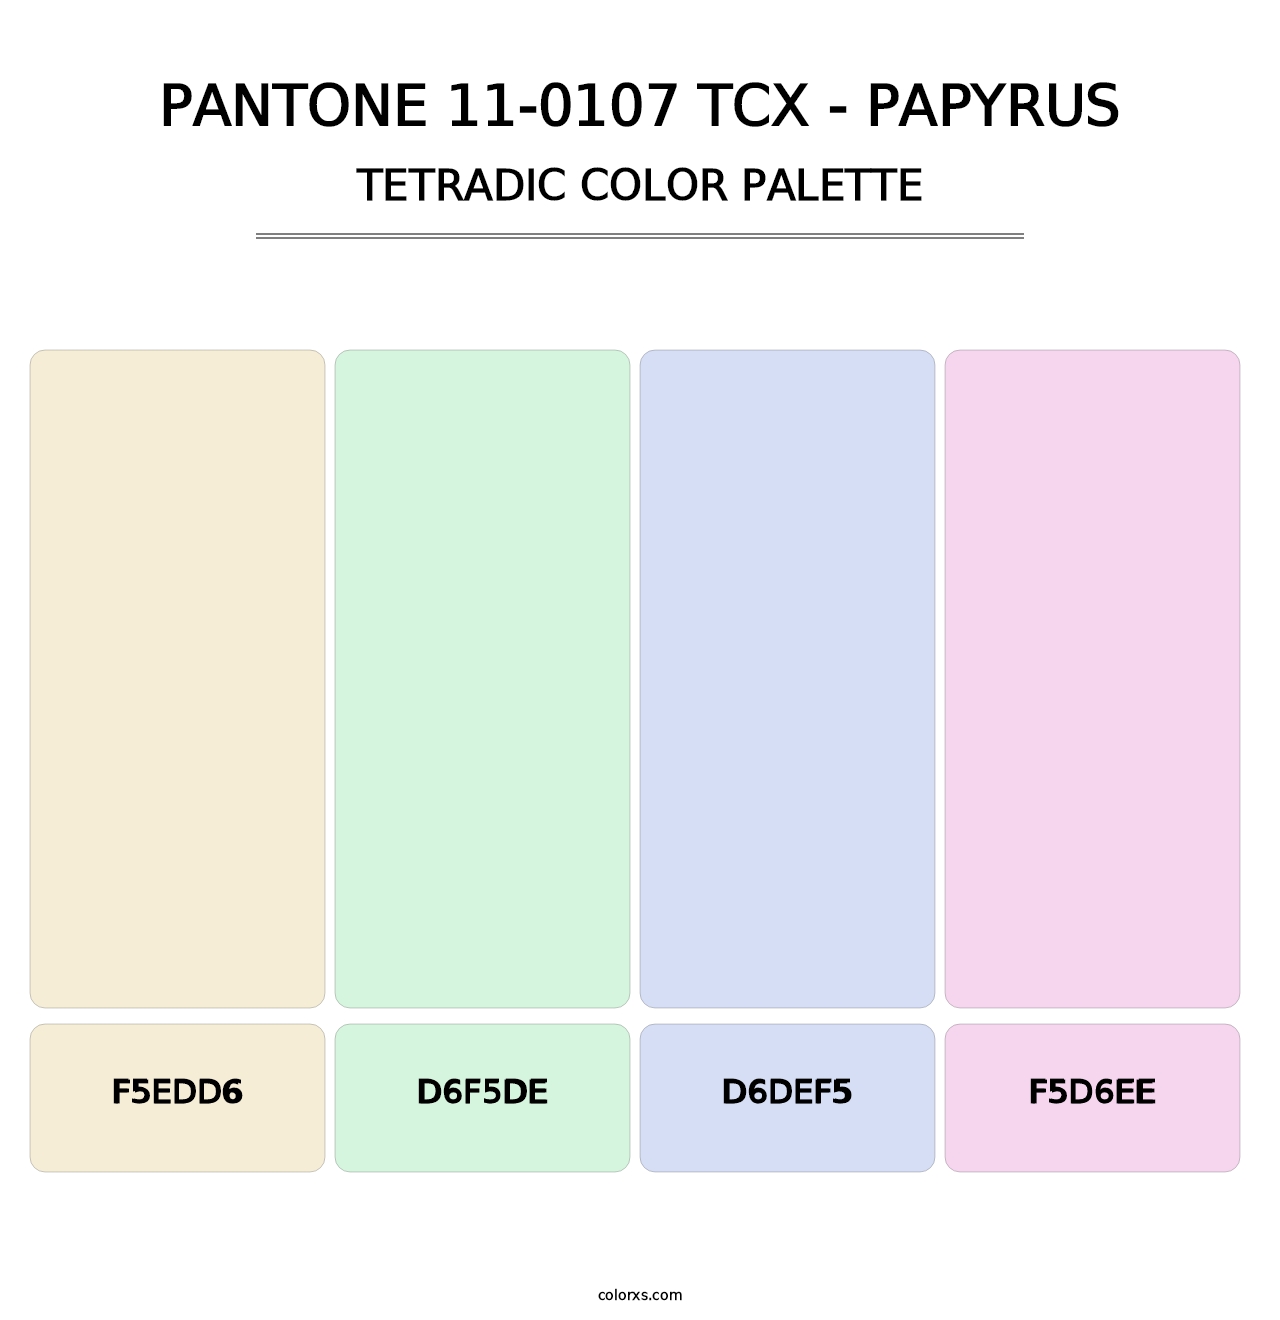 PANTONE 11-0107 TCX - Papyrus - Tetradic Color Palette